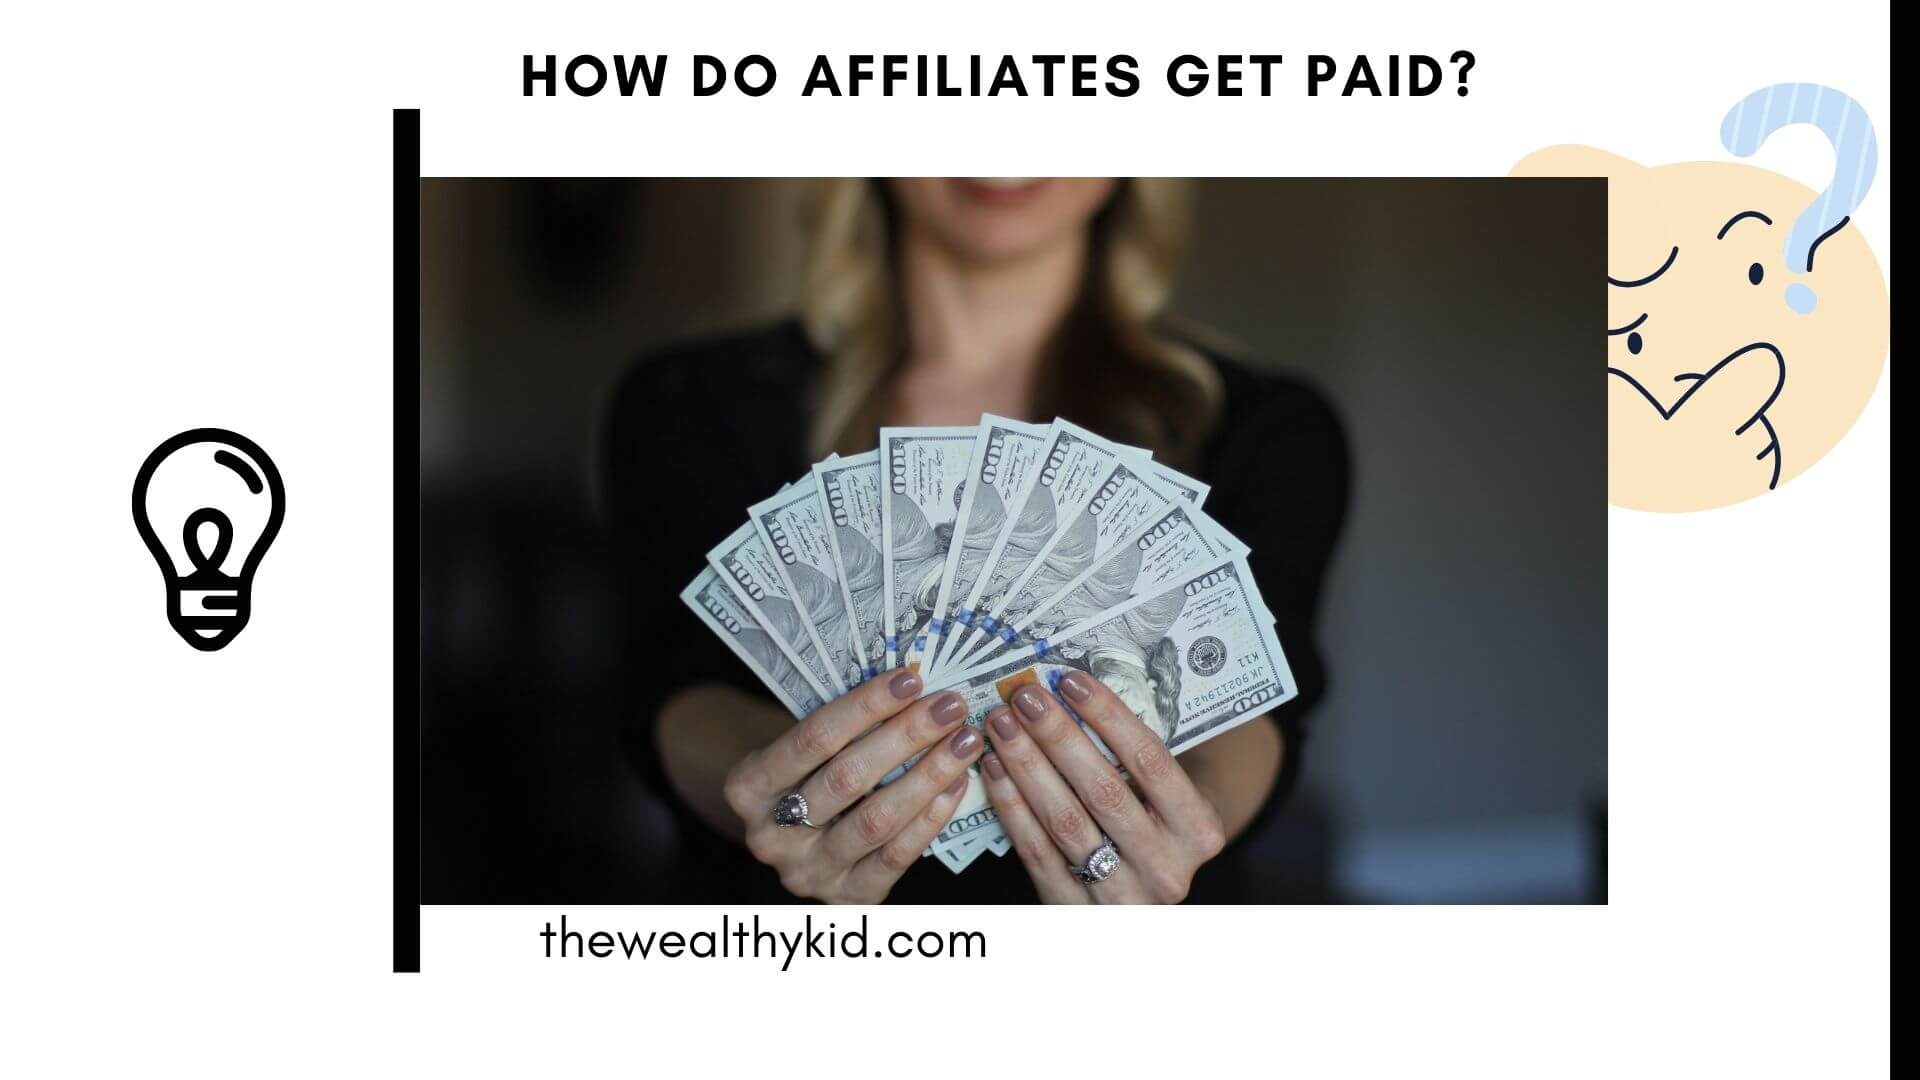 How do affiliates get paid